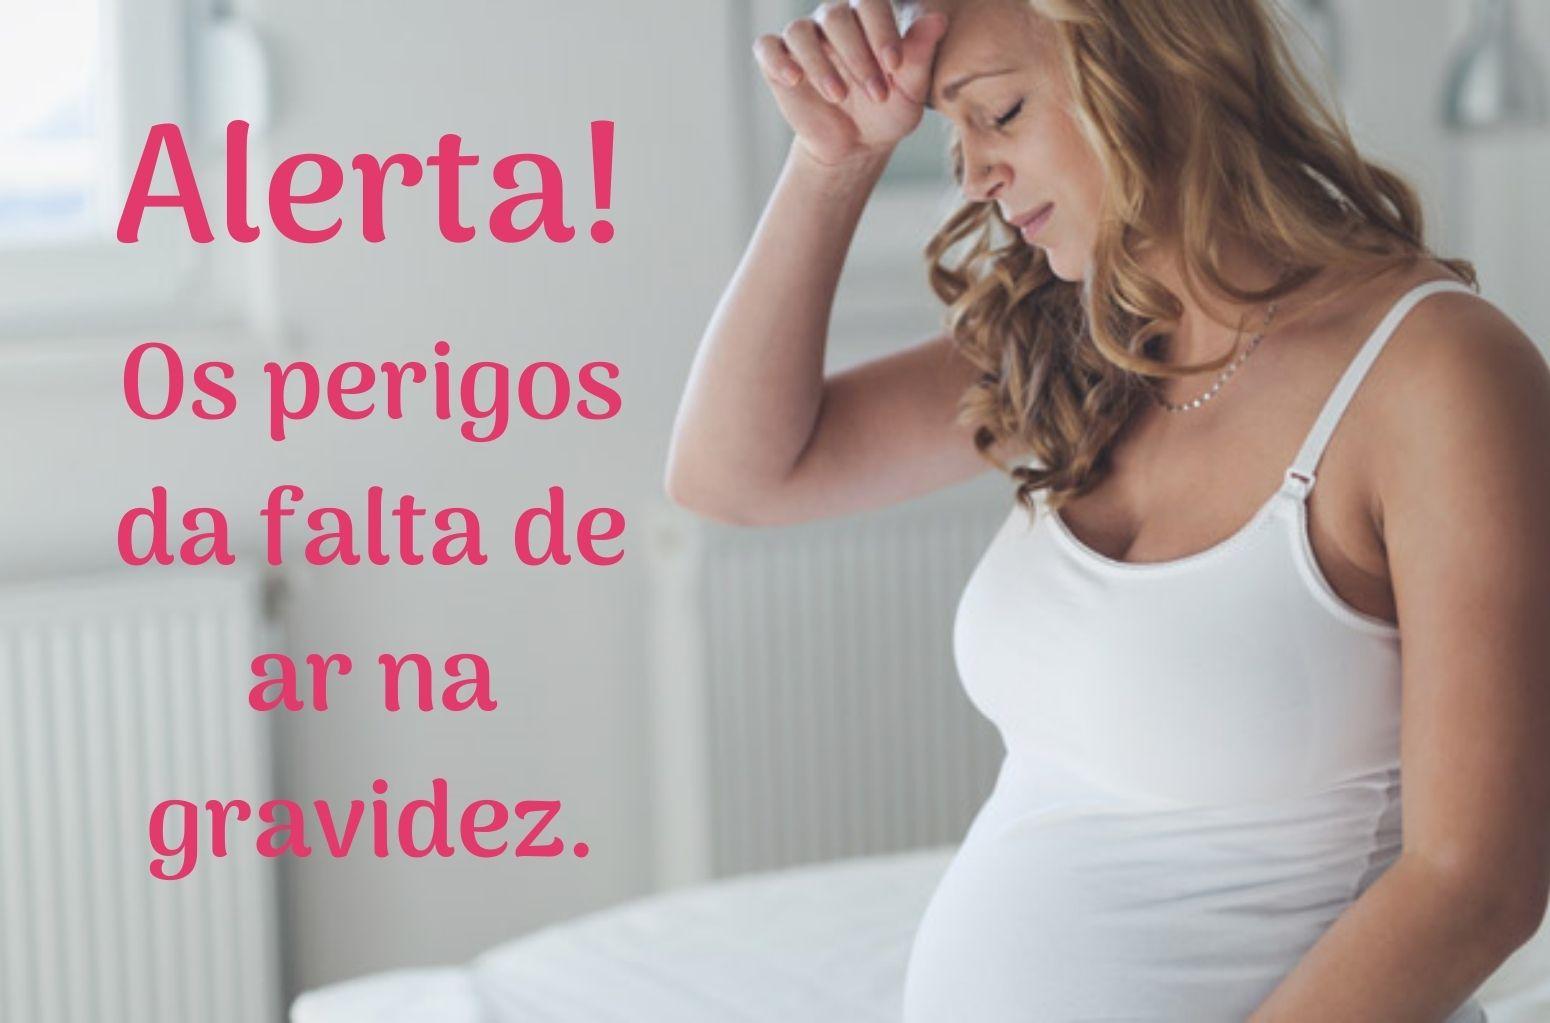 Blog - Alerta Falta de Ar Na gravidez